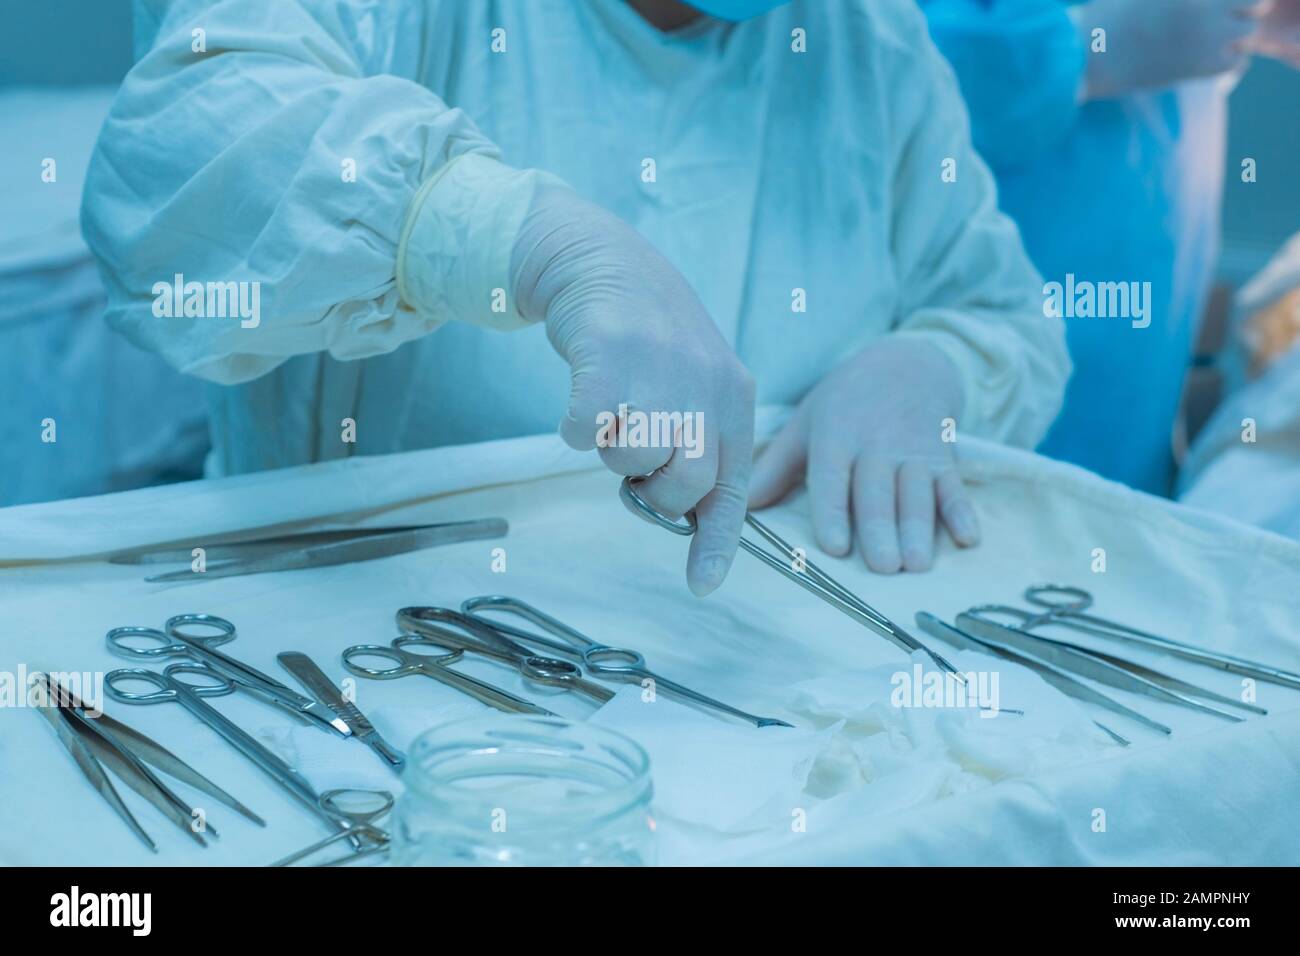 Стерильный перевязочный стол. Хирургия стерильный стол. Накрытие стерильного стола. Накрывание стерильного стола для инструментов. Хирургическая медсестра и инструменты.